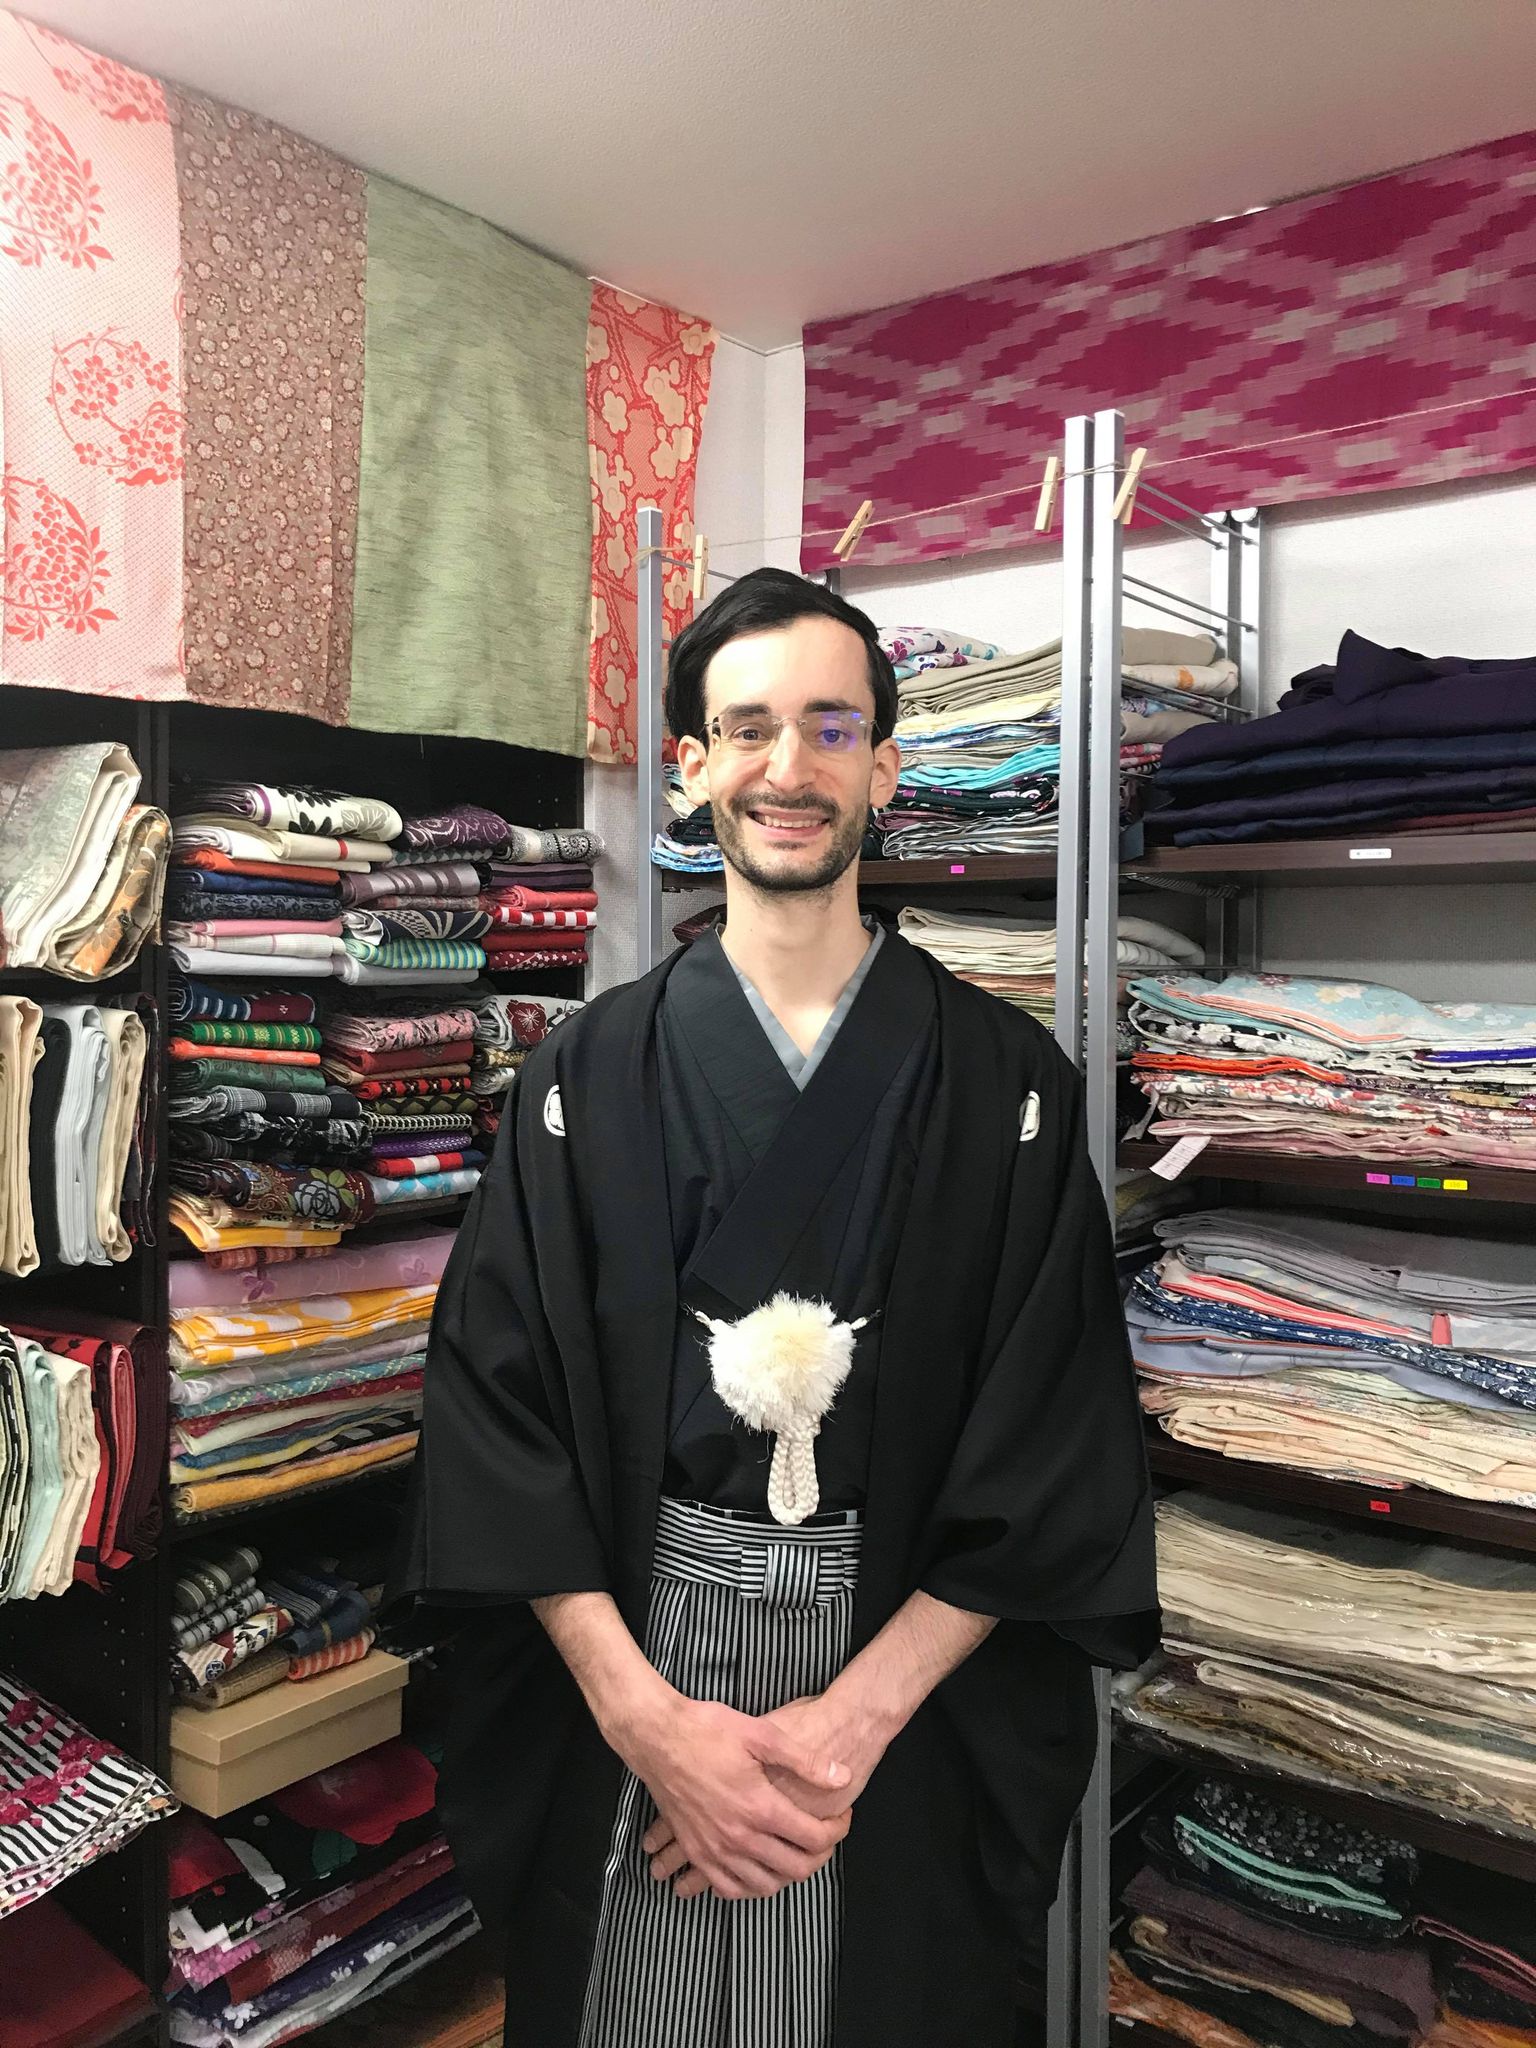 ひろしまきもの遊び - 着物レンタルや着付けレッスン、和文化企画など広島で着物を通じて日常を愉しむ提案とコミュニティづくり